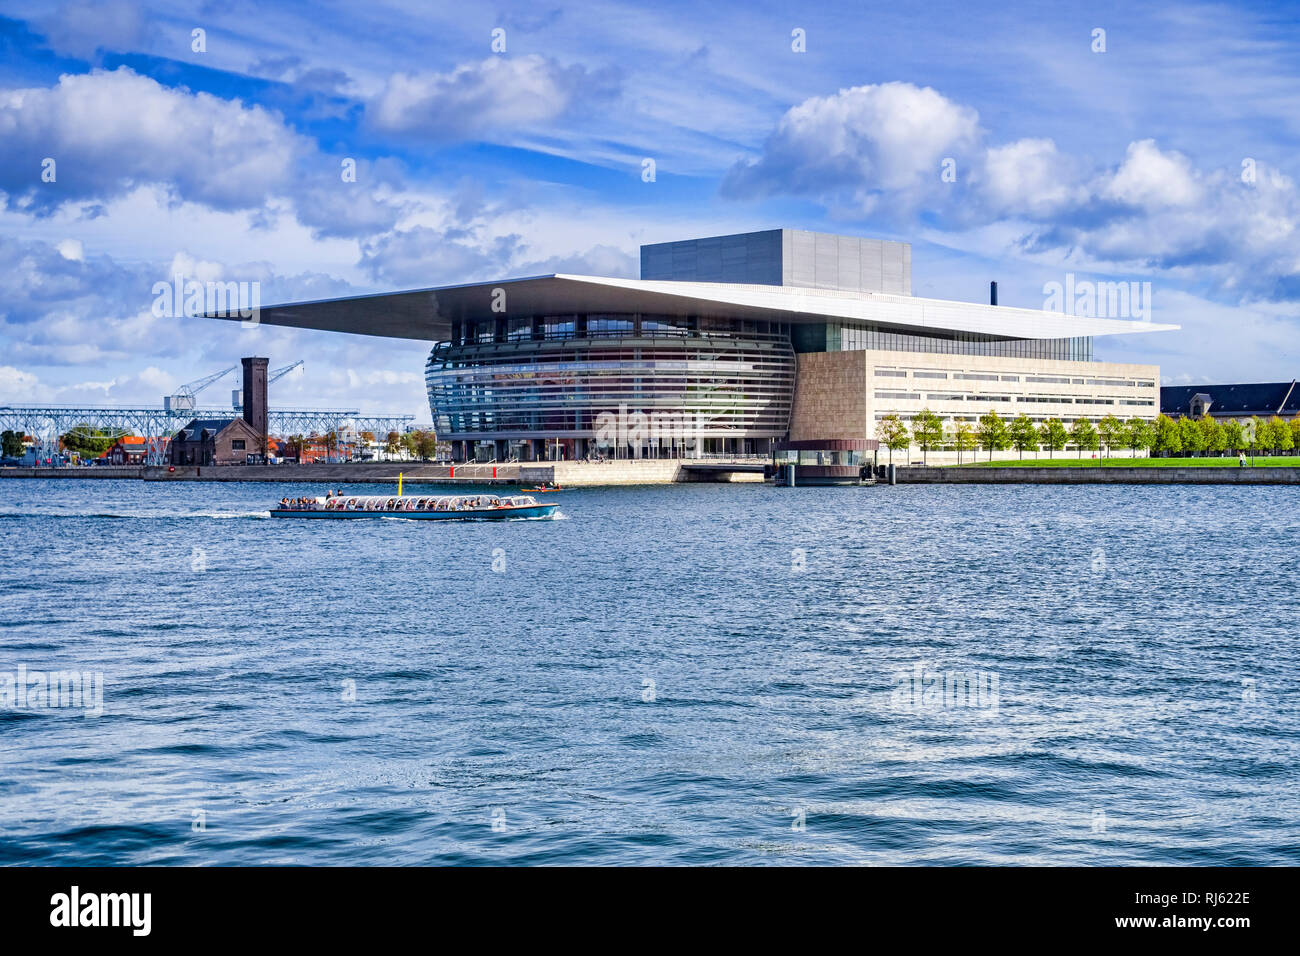 23 Septembre 2018 : Copenhague, Danemark - l'Opéra de Copenhague, ou Operaen, sur l'île de Holmen, avec un bateau de tourisme passant sur le port. Banque D'Images